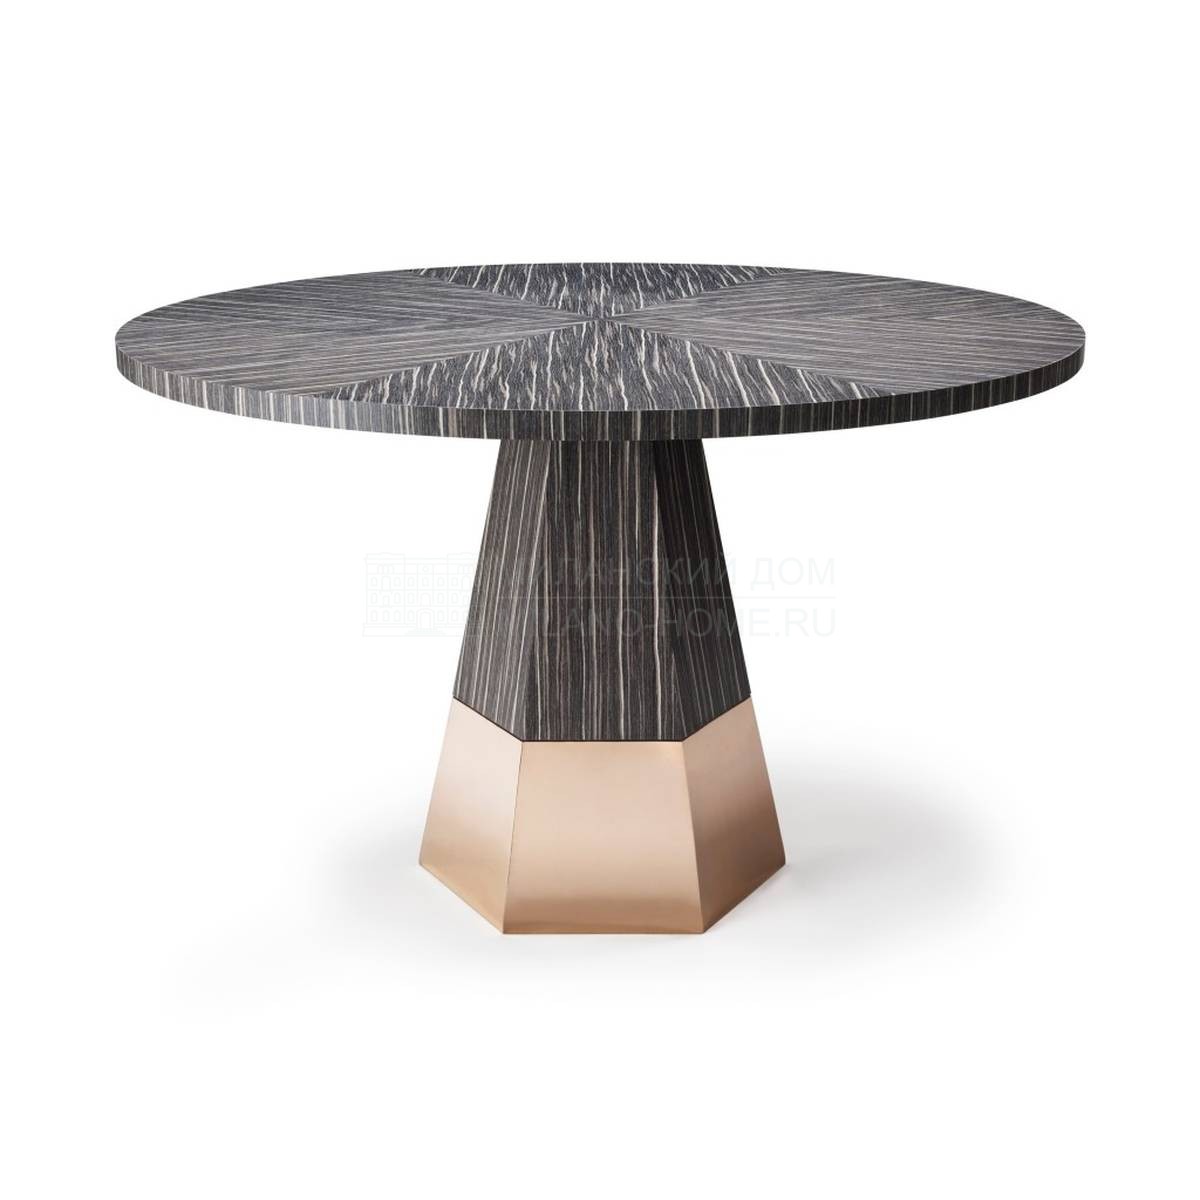 Обеденный стол Equilibrium Table из Великобритании фабрики AMY SOMERVILLE